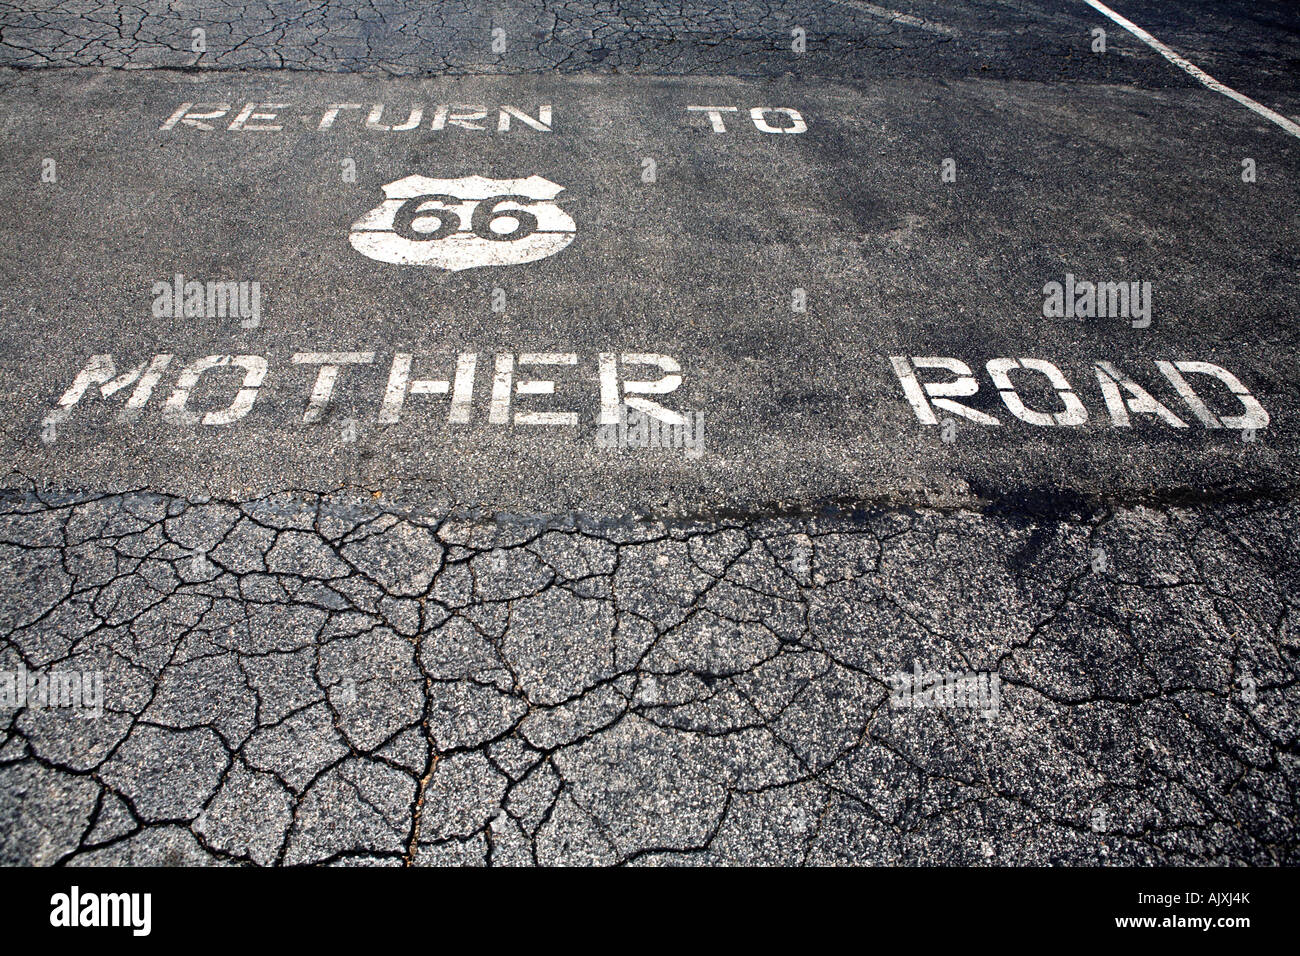 Ritorno alla madre cartello stradale dipinta sul manto di asfalto percorso 66 missouri usa Foto Stock